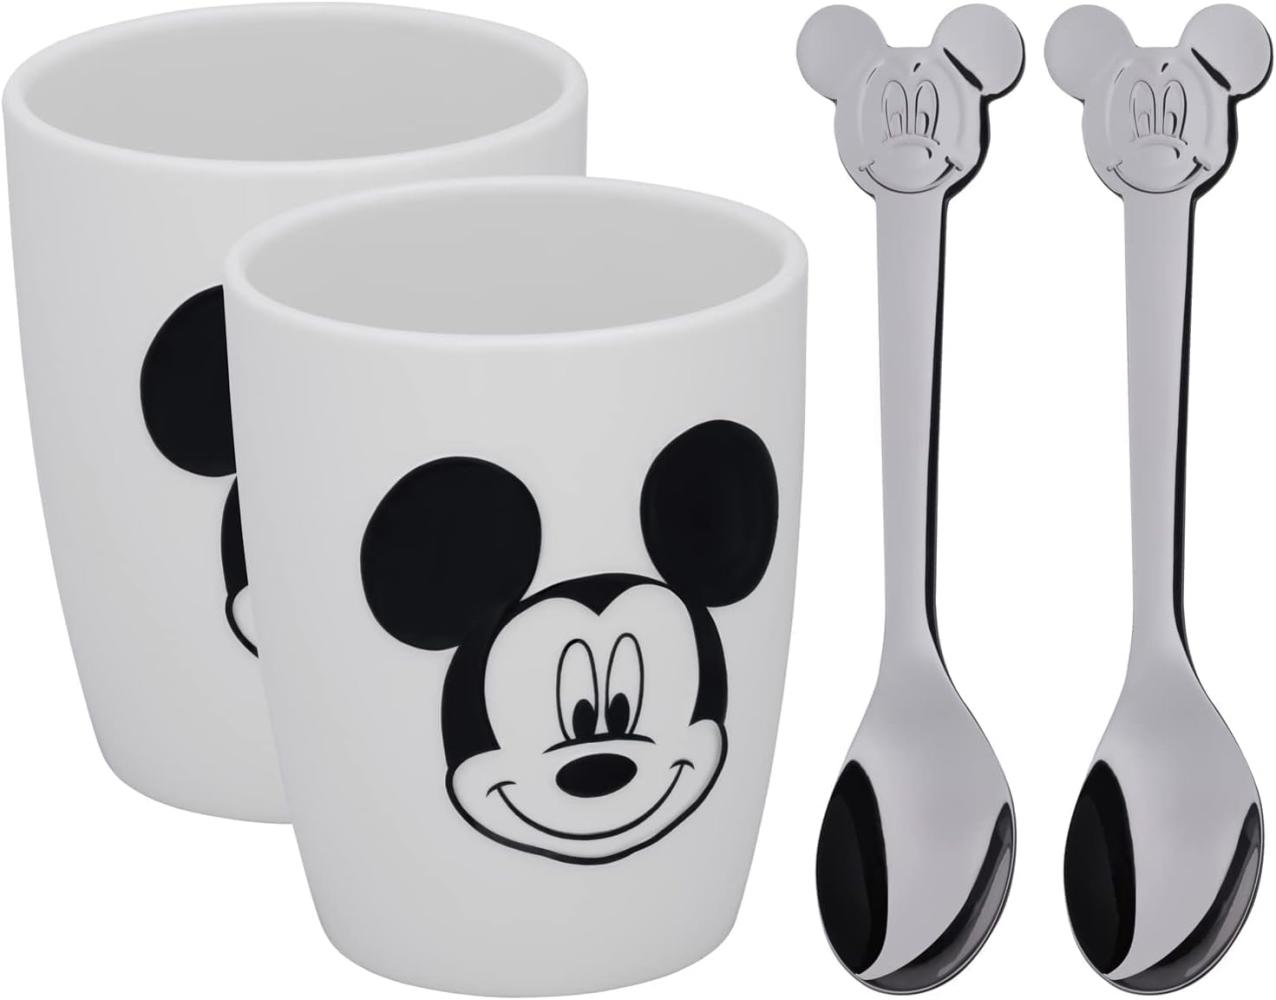 WMF Becher-Set Disney Mickey Mouse, Größe M, 4-teilig 3201005817 Bild 1